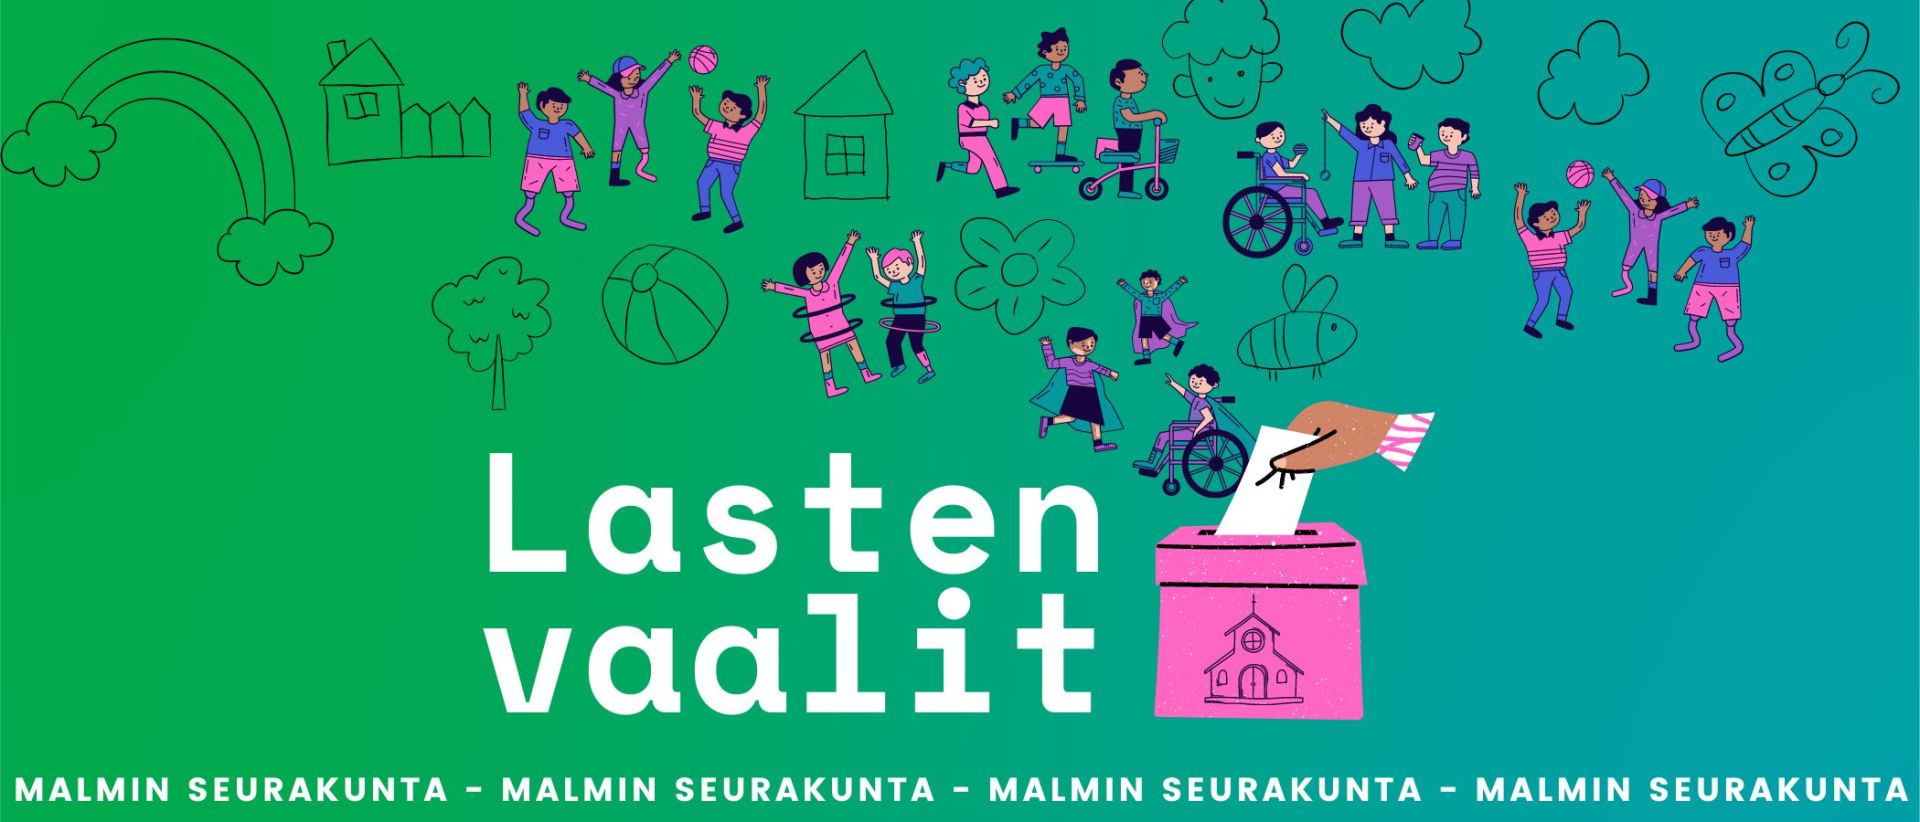 Lasten vaalit Malmin seurakunta -teksti vihreällä pohjalla, vaalenpunainen äänestyslaatikko, piirrettyjä lapsia,